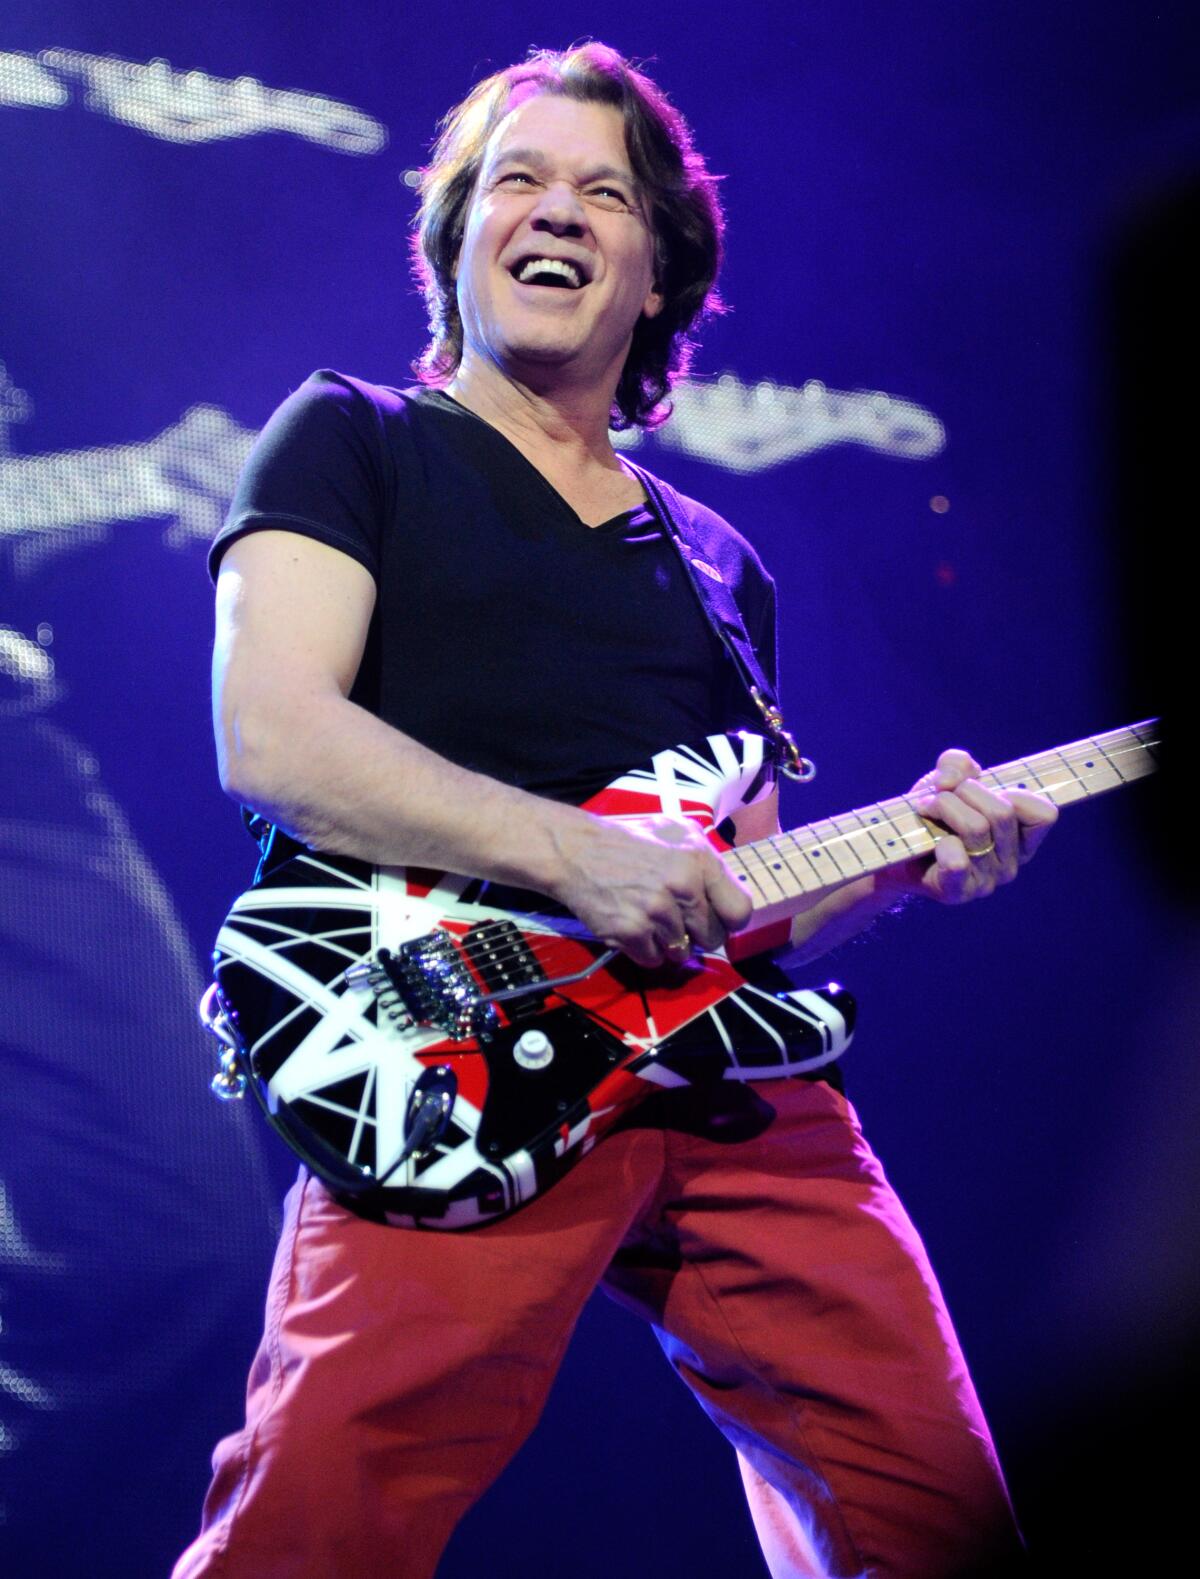 Eddie Van Halen playing guitar in 2012.